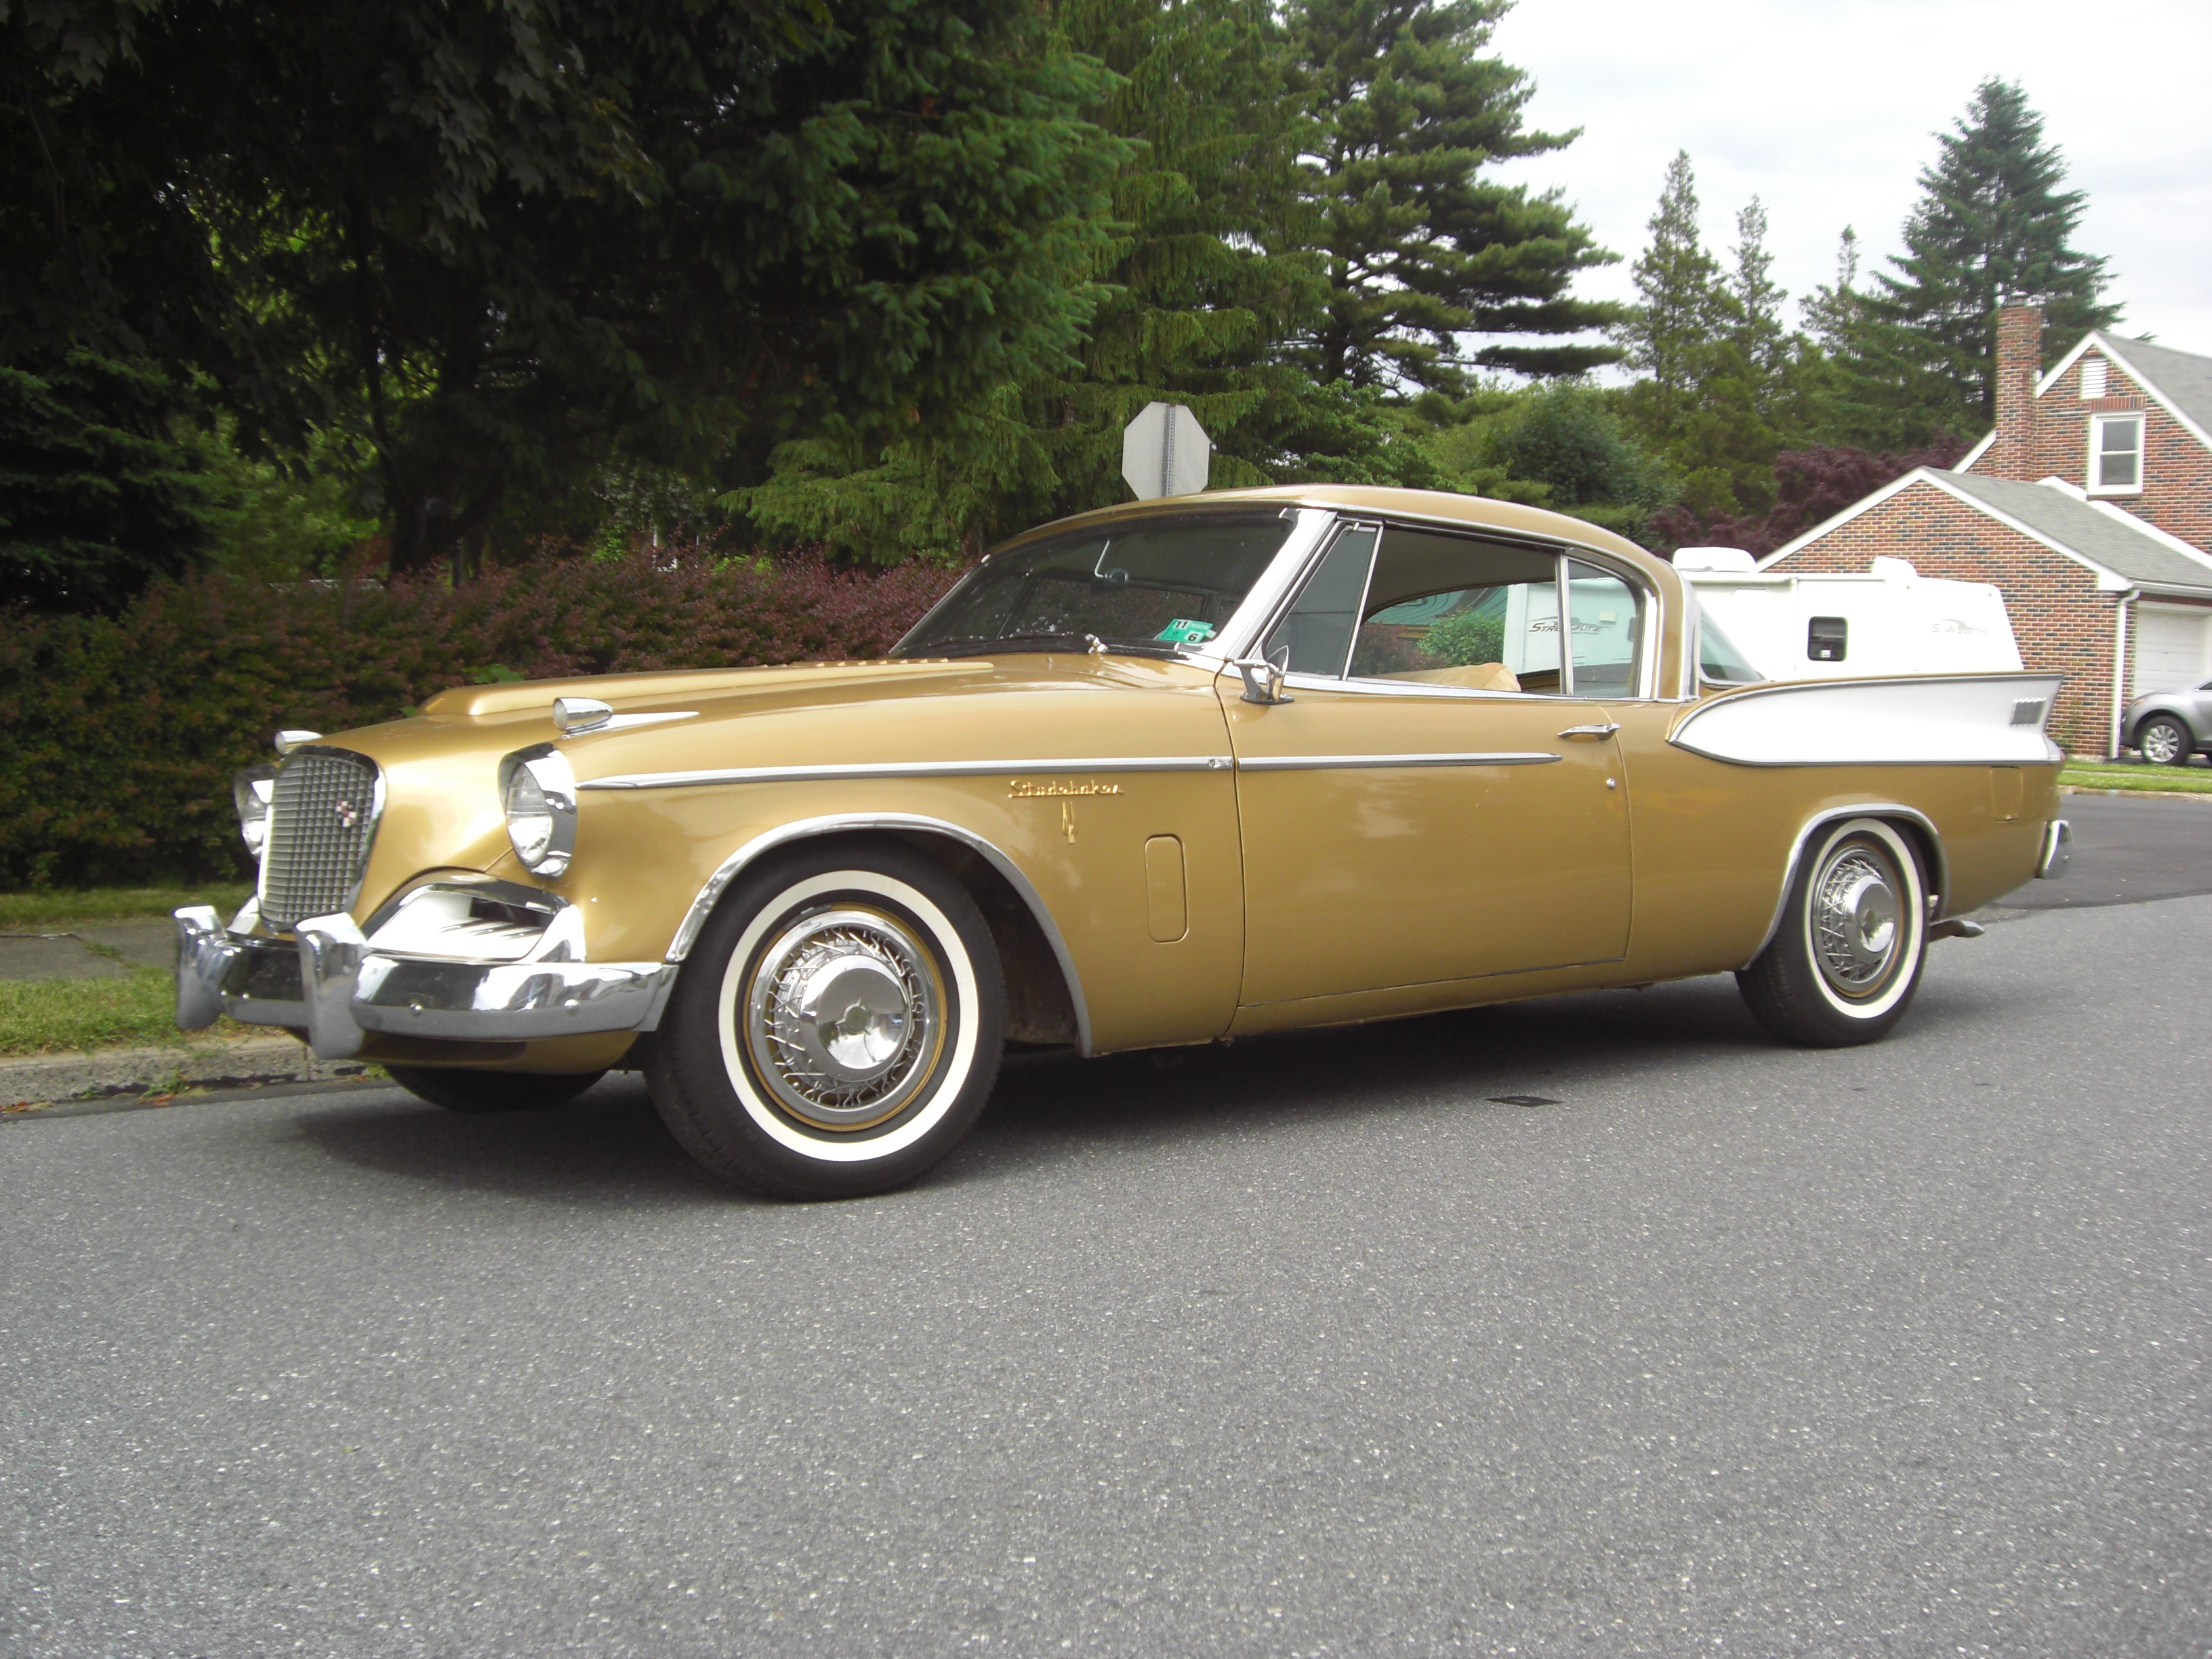 Download mobile wallpaper Car, Old Car, Vintage Car, Studebaker, Vehicles, Brown Car, Studebaker Golden Hawk for free.